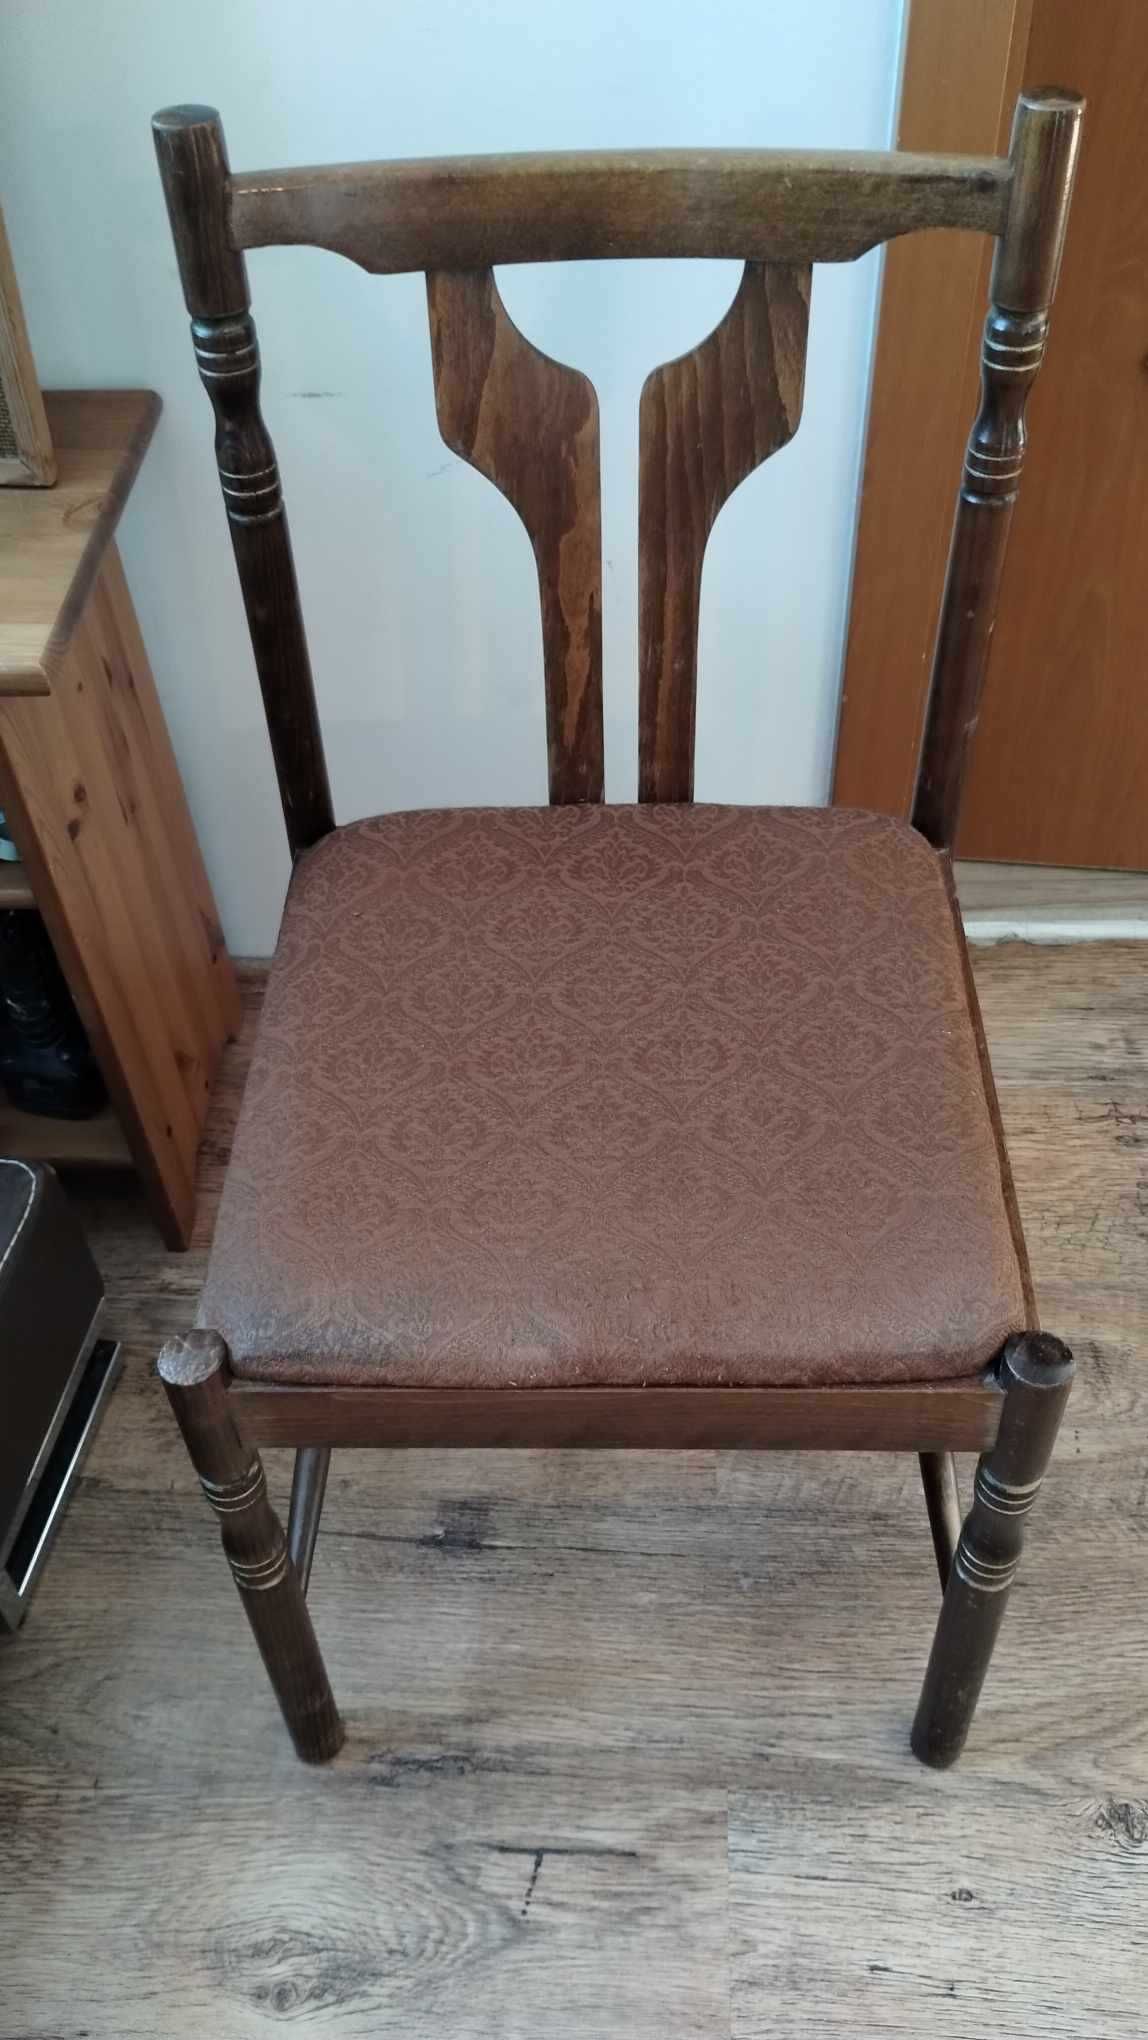 krzesło drewniane do renowacji 2 szt